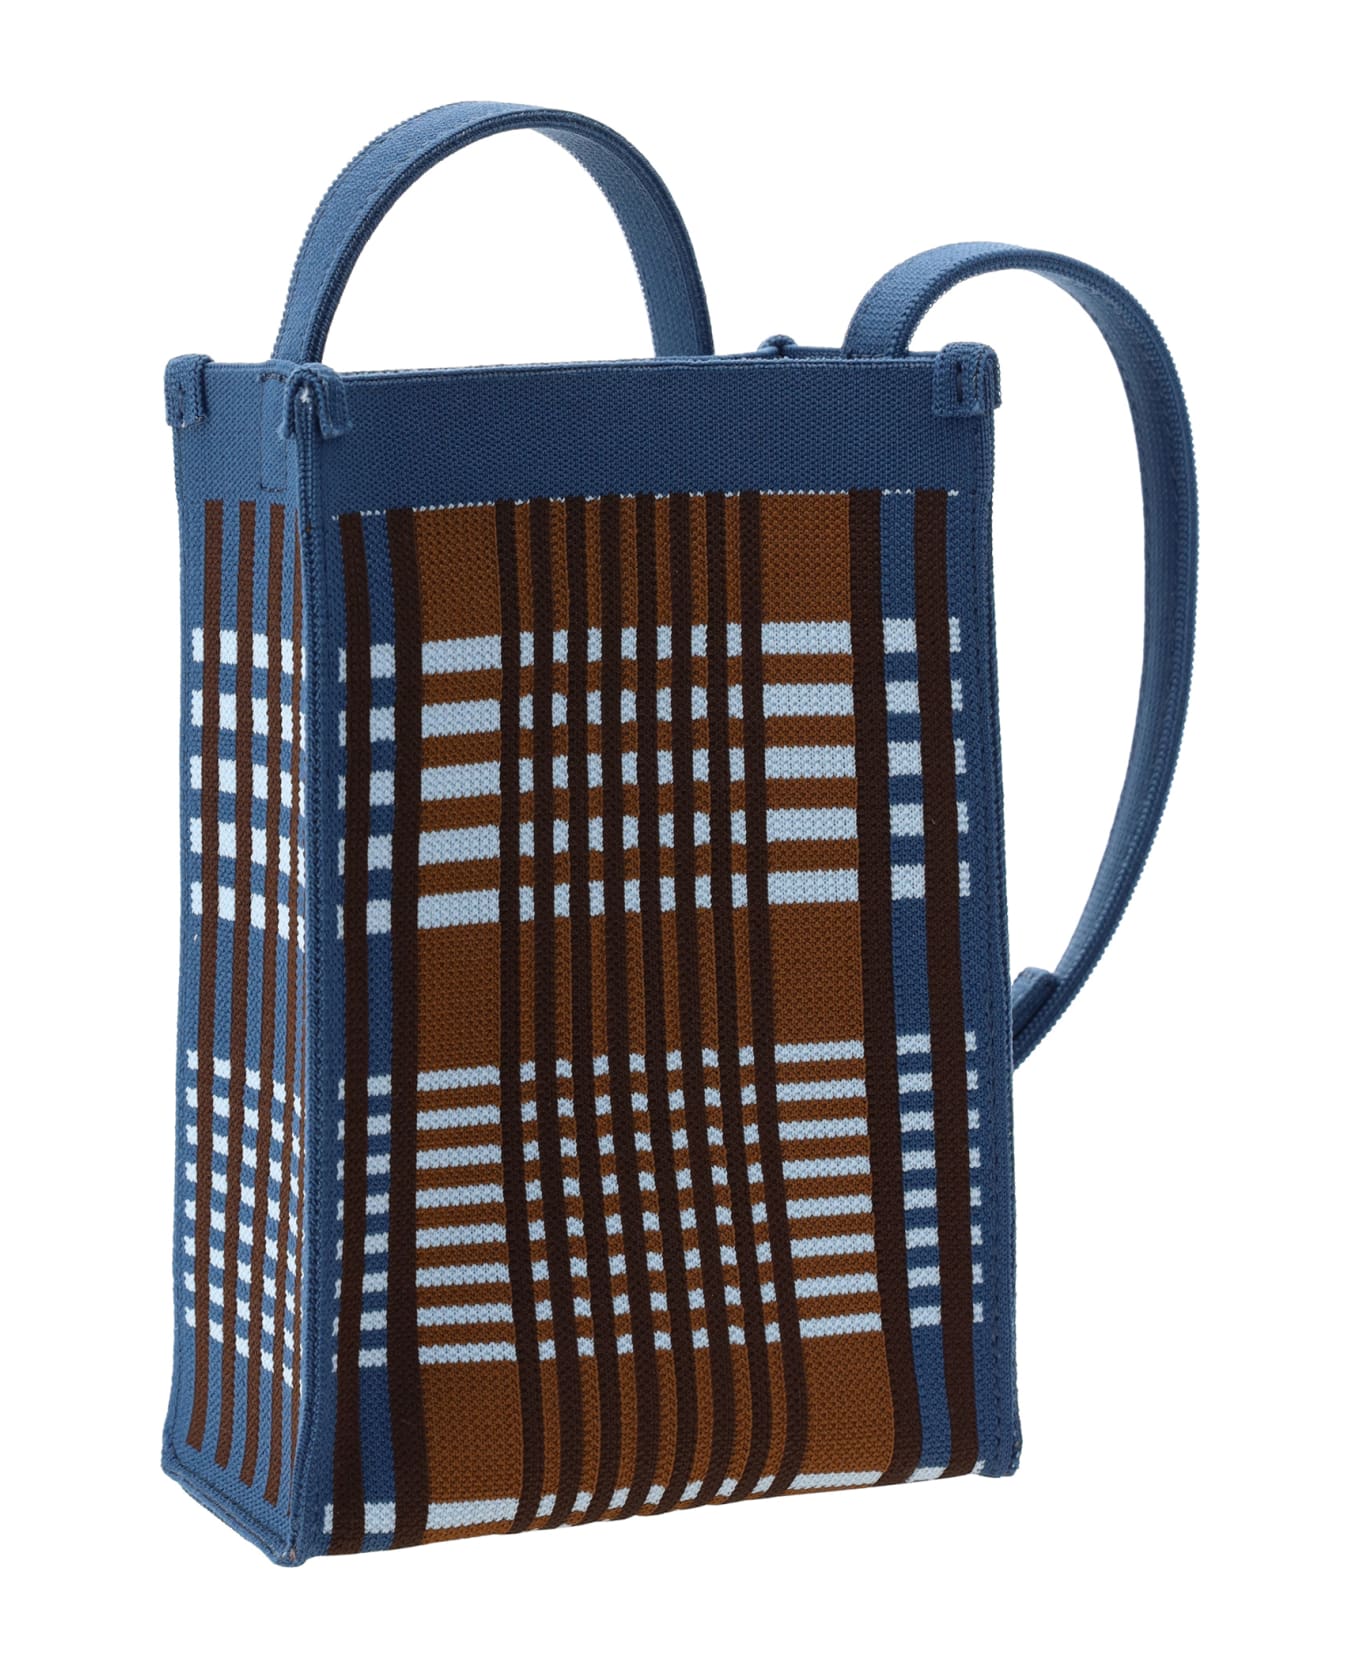 Marni Shoulder Bag - Light Blue/rust